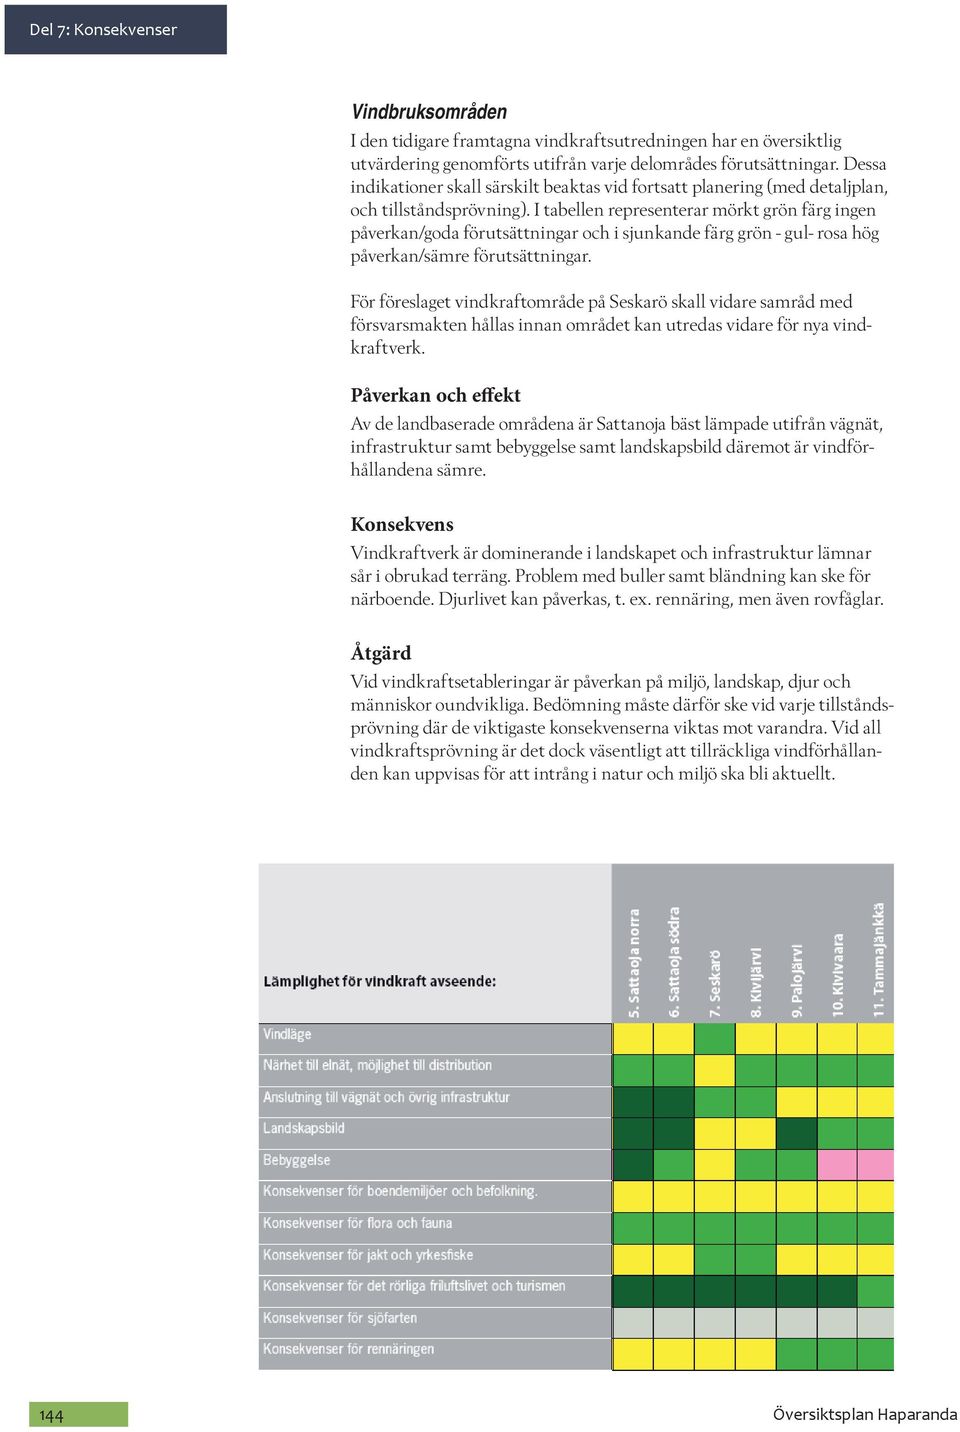 I tabellen representerar mörkt grön färg ingen påverkan/goda förutsättningar och i sjunkande färg grön - gul- rosa hög påverkan/sämre förutsättningar.